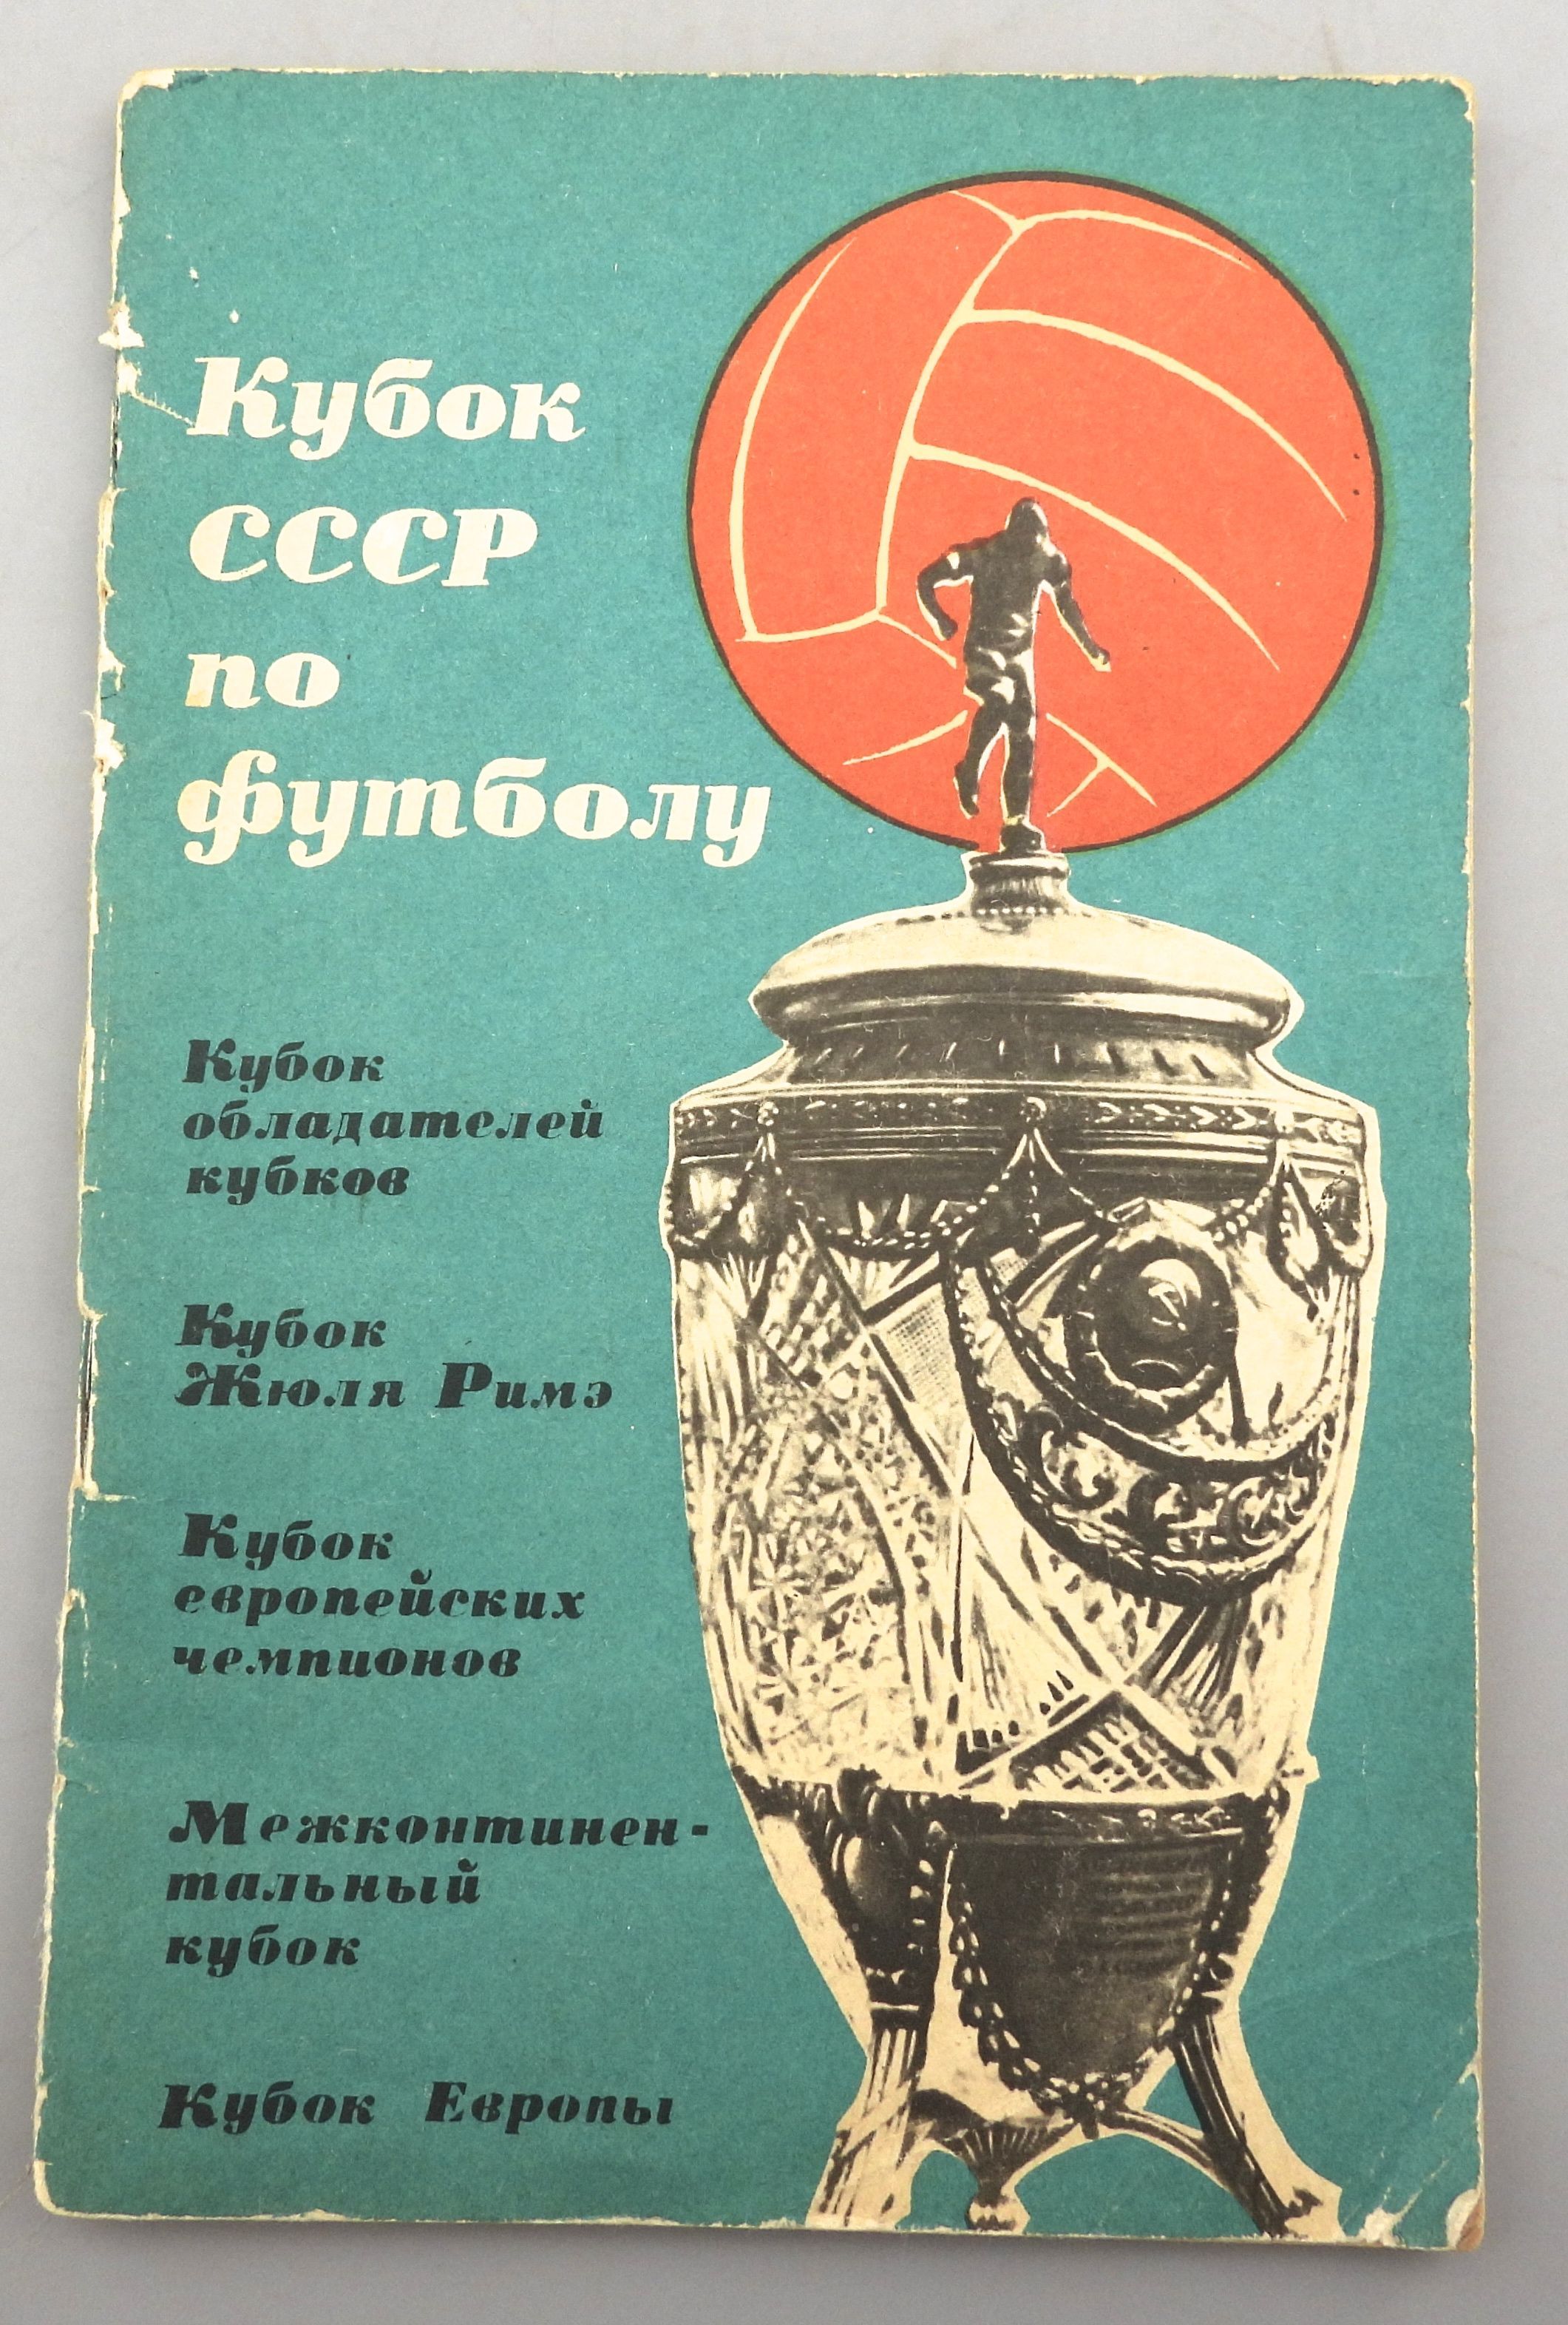 Советский футбол читать